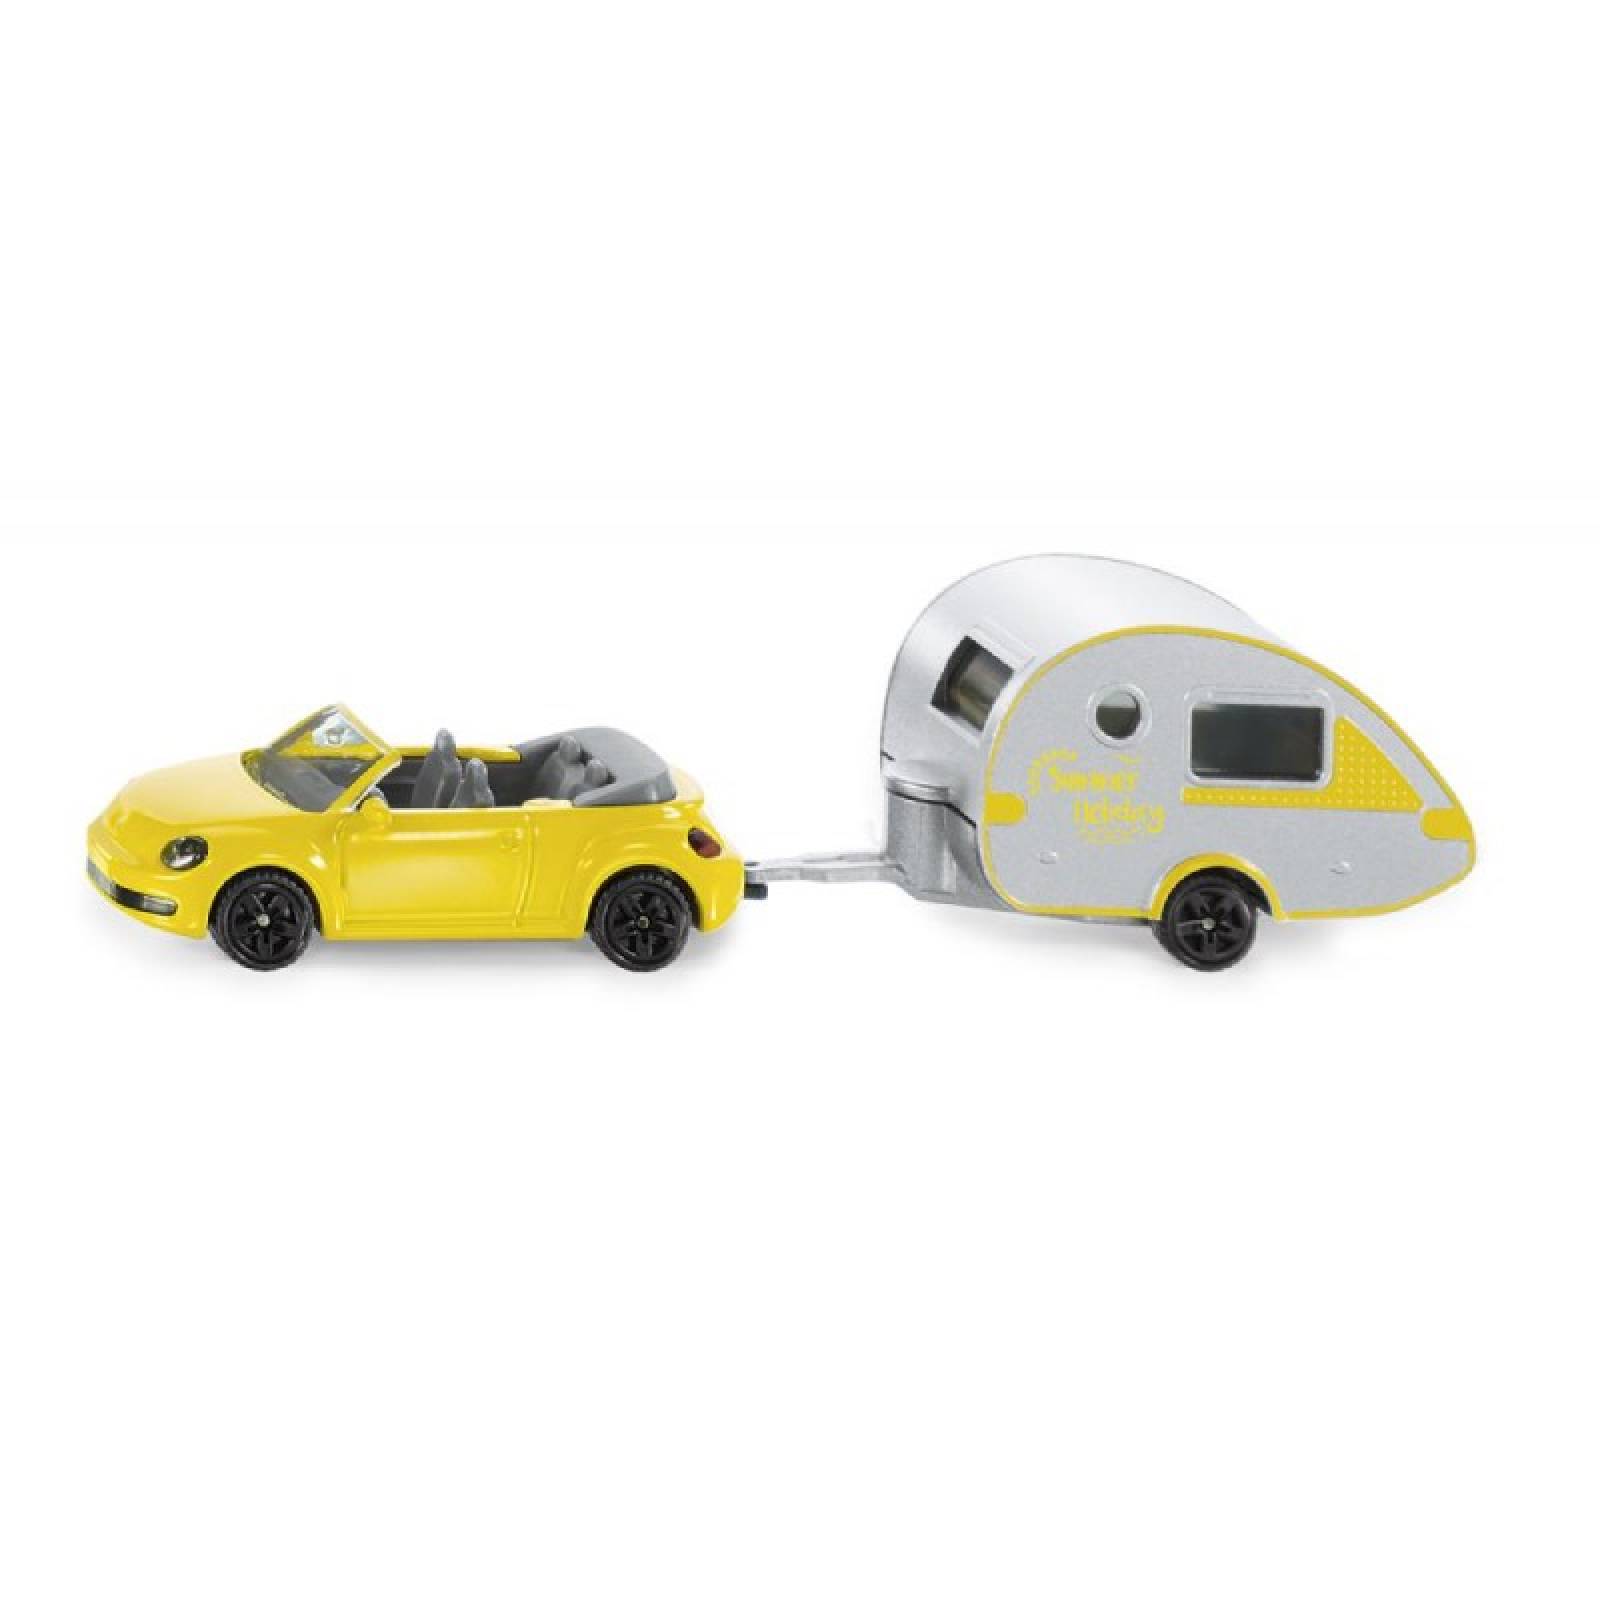 VW Beetle & Caravan - Double Die-Cast Toy Vehicle 1629 3+